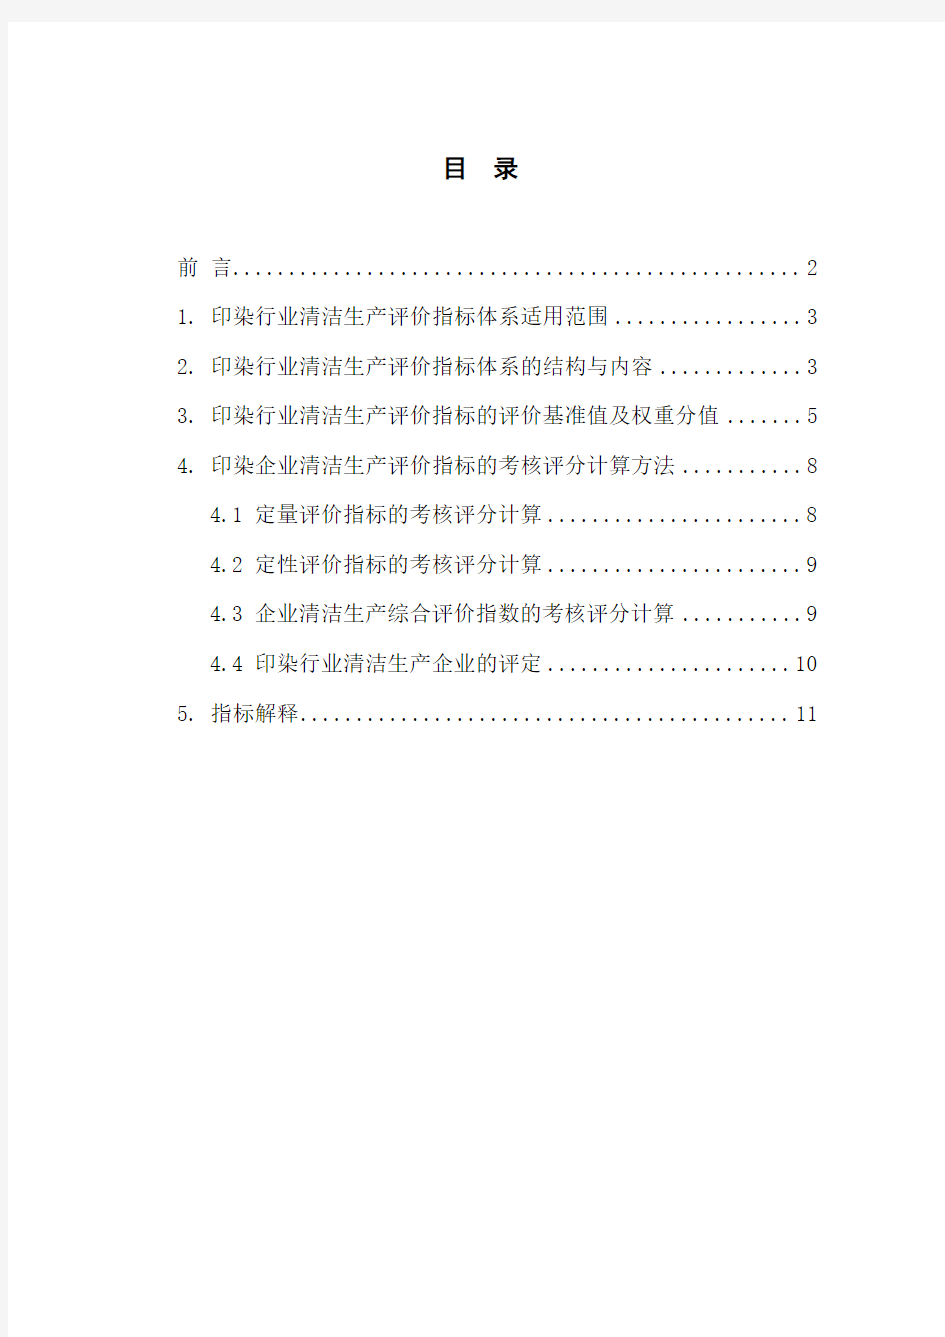 印染行业清洁生产评价指标体系(试行)-中华人民共和国国家